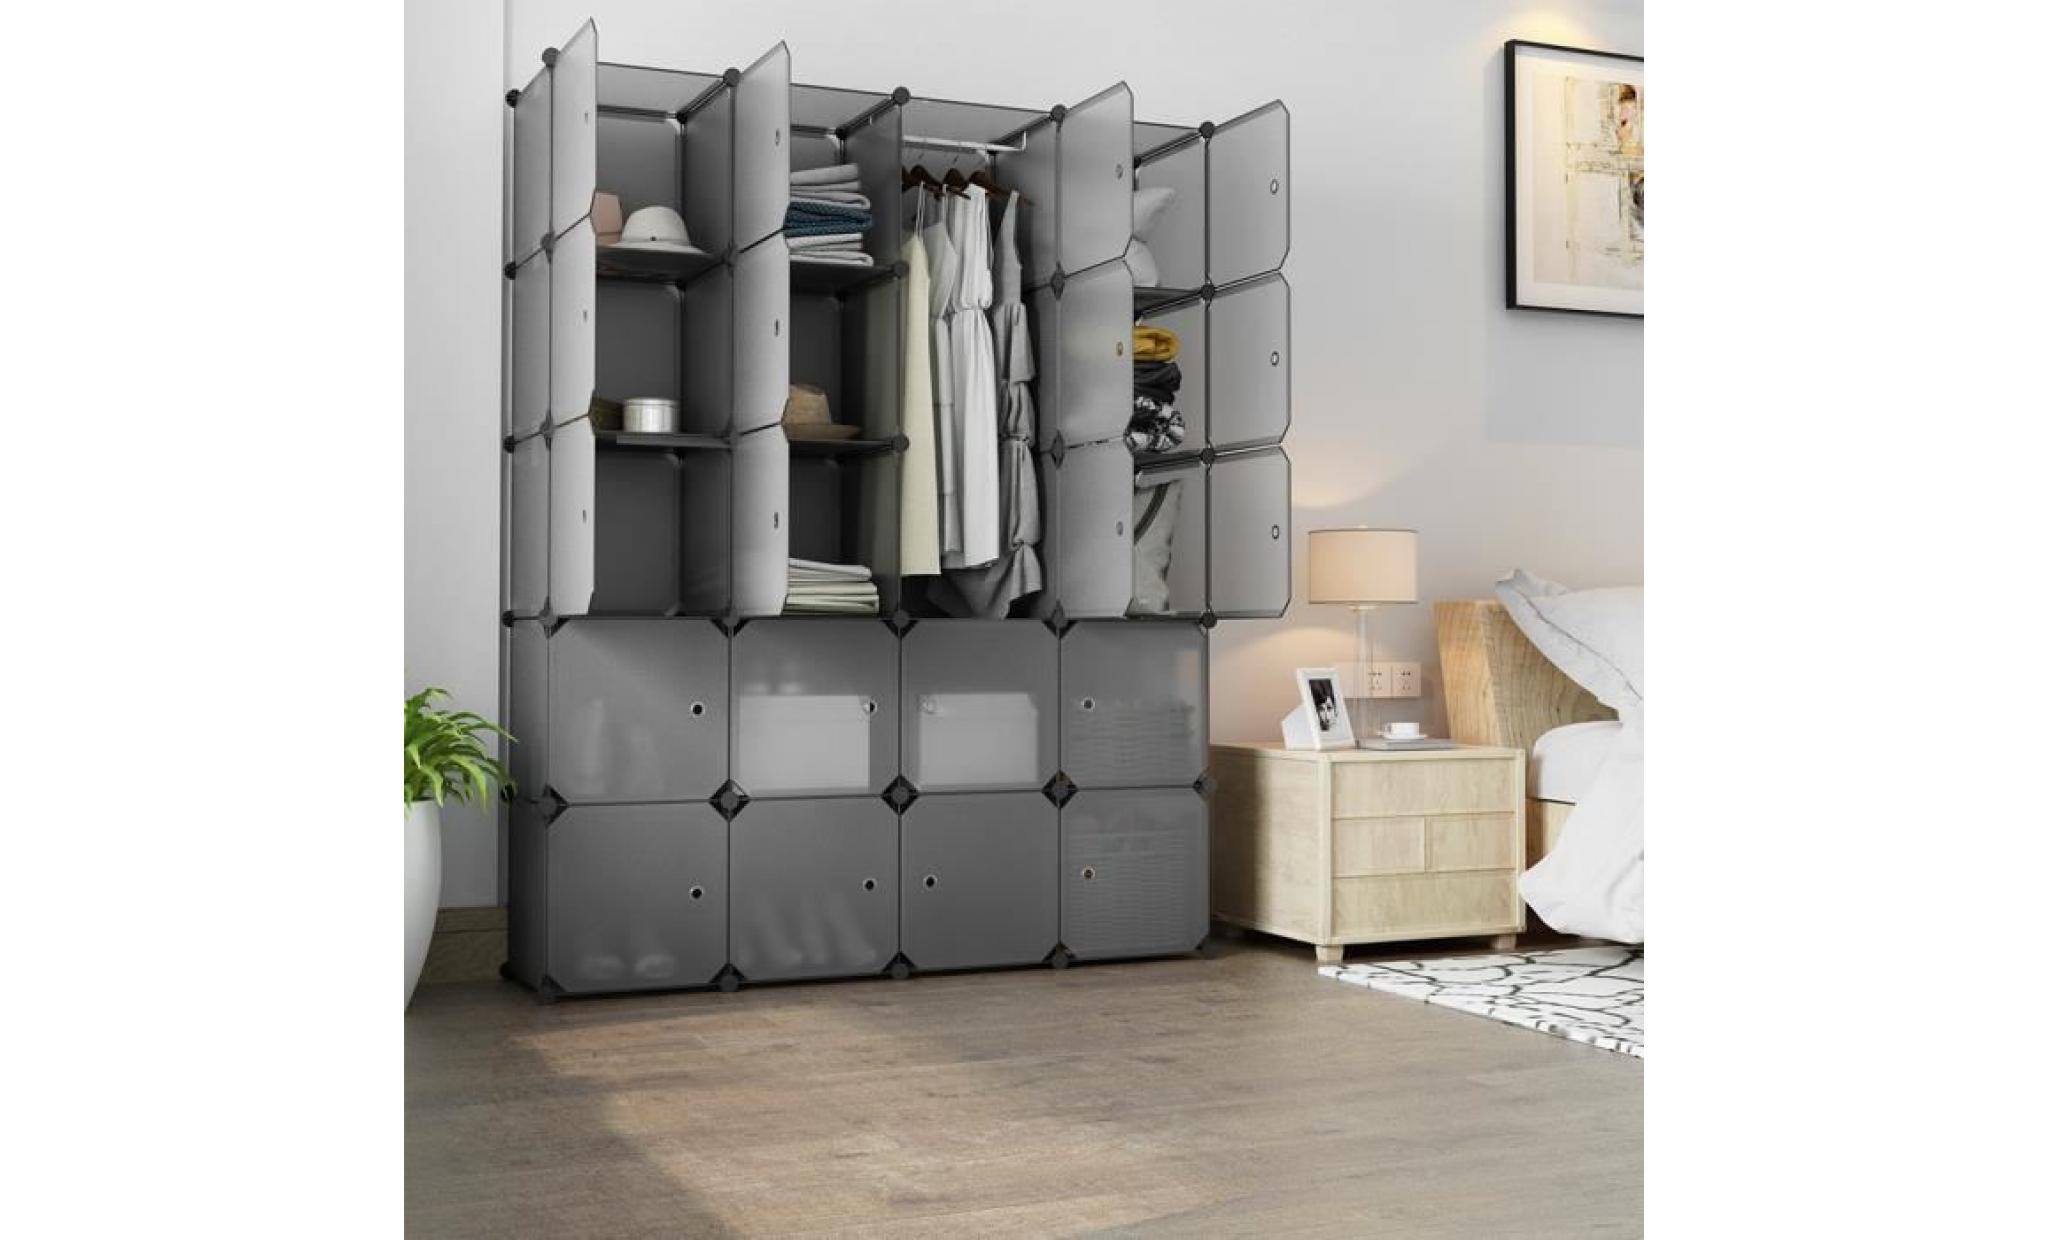 armoire langria 20 cube multifonctionnel modulaire placard cabinet empilable en plastique cube gris transparent